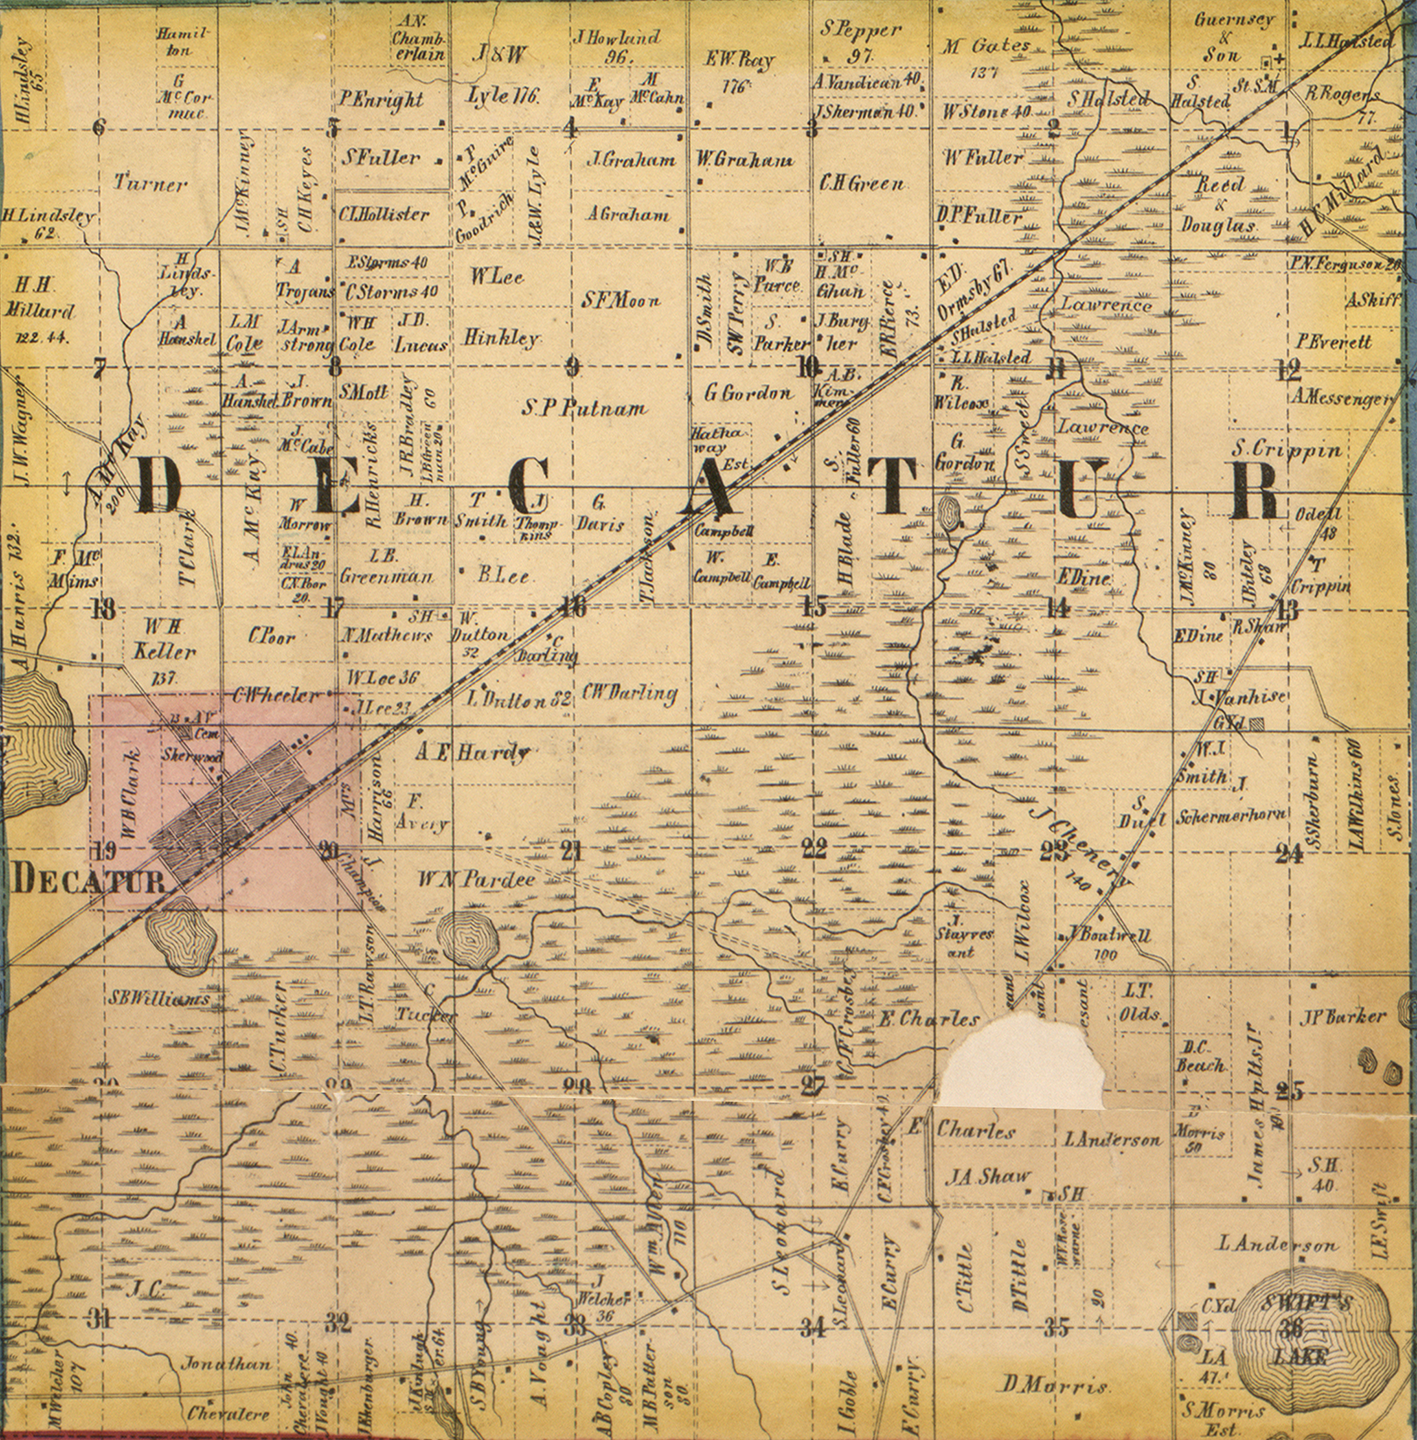 1860 Decatur Township, Michigan landownership map